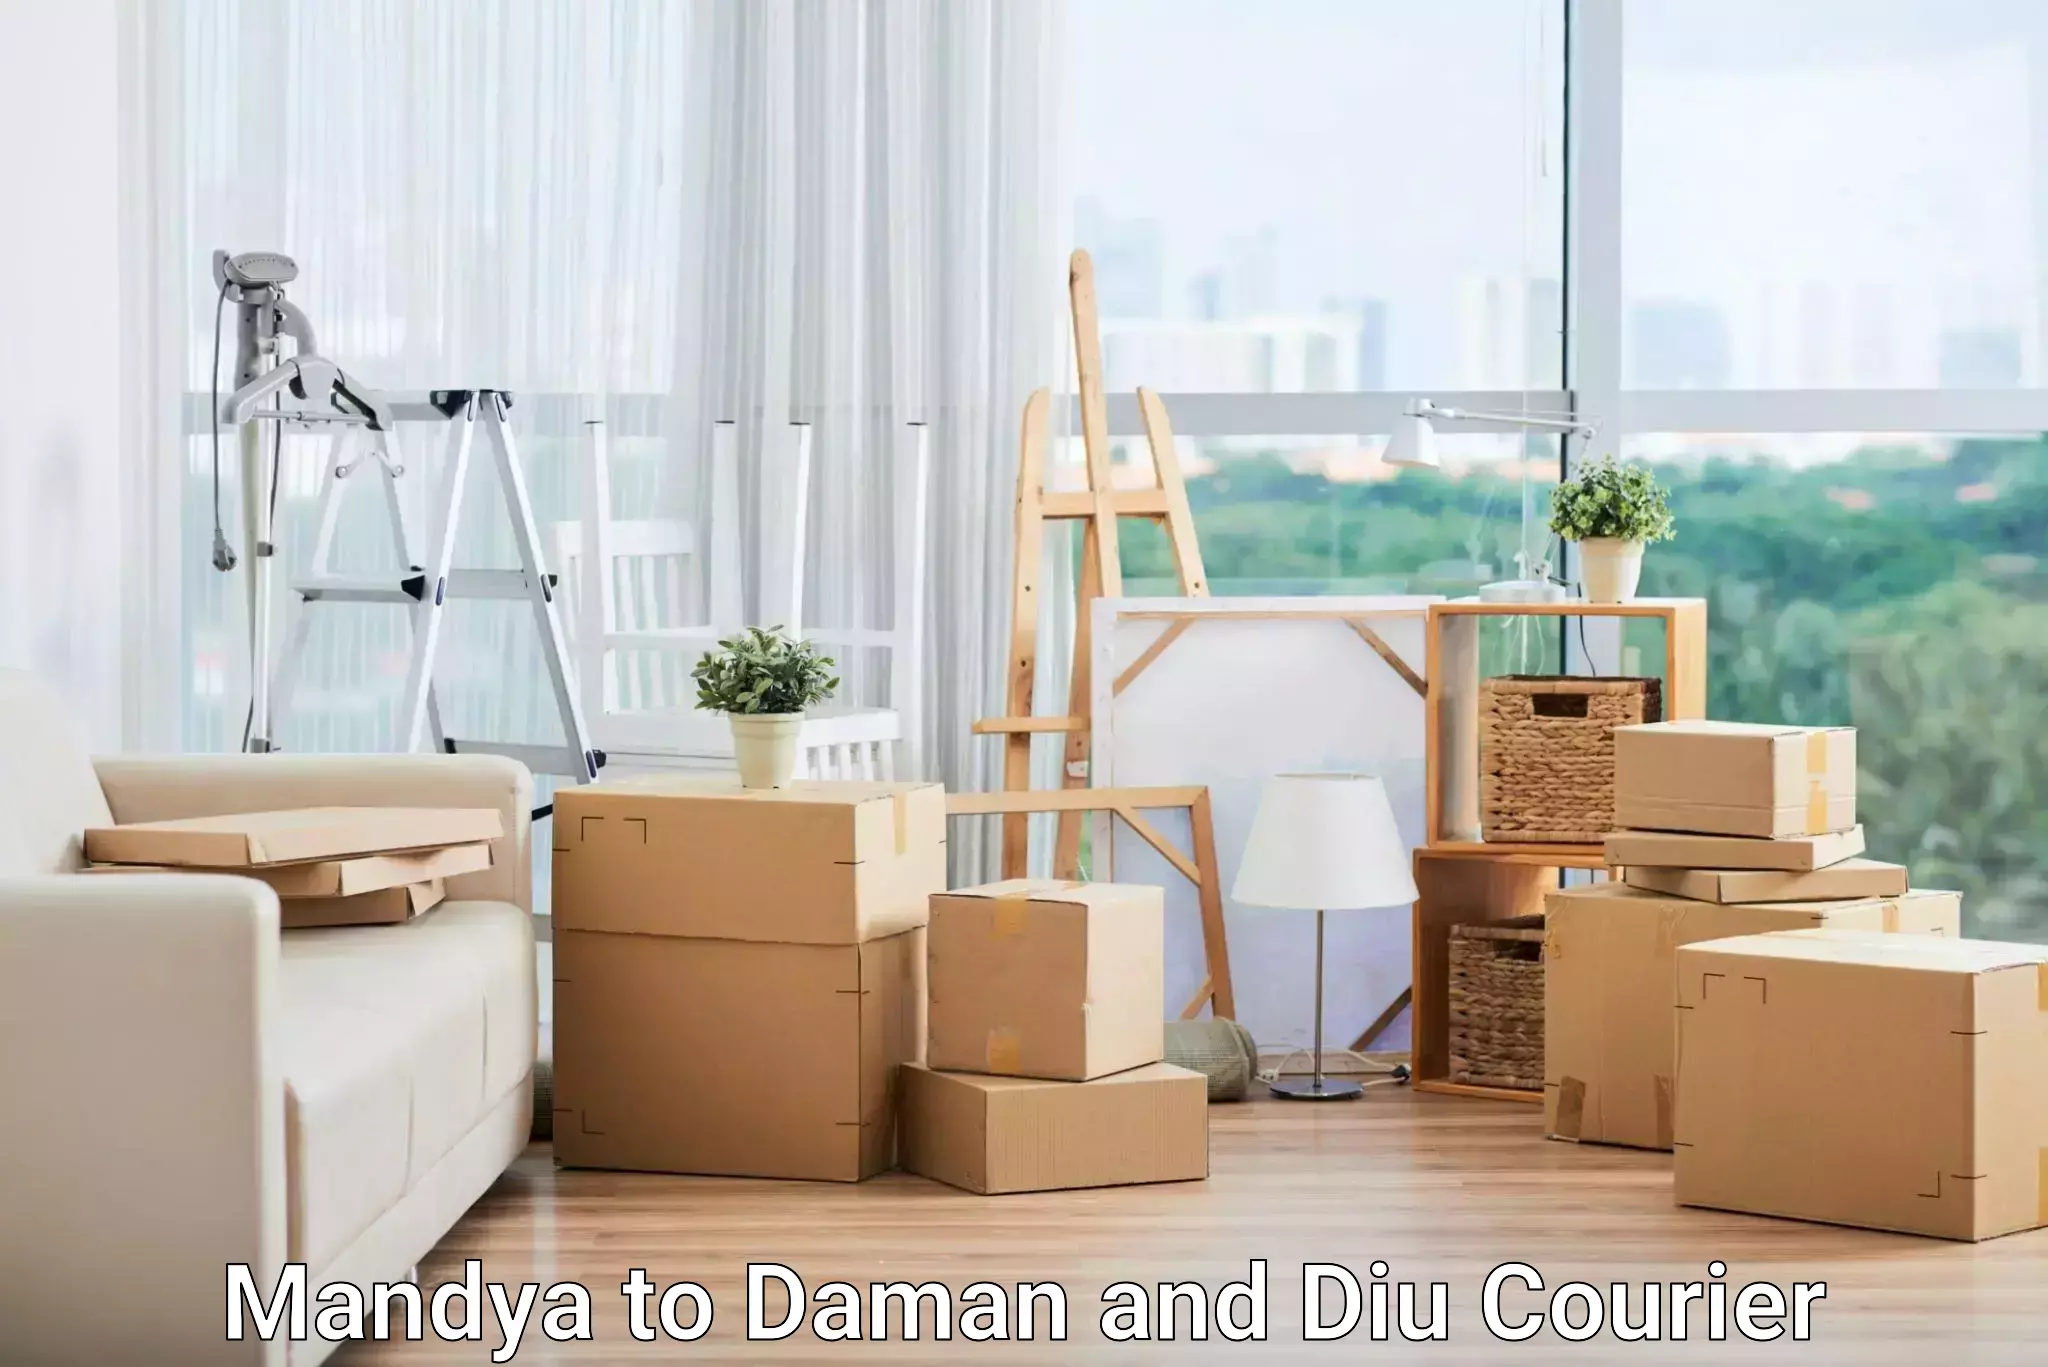 Business shipping needs Mandya to Daman and Diu